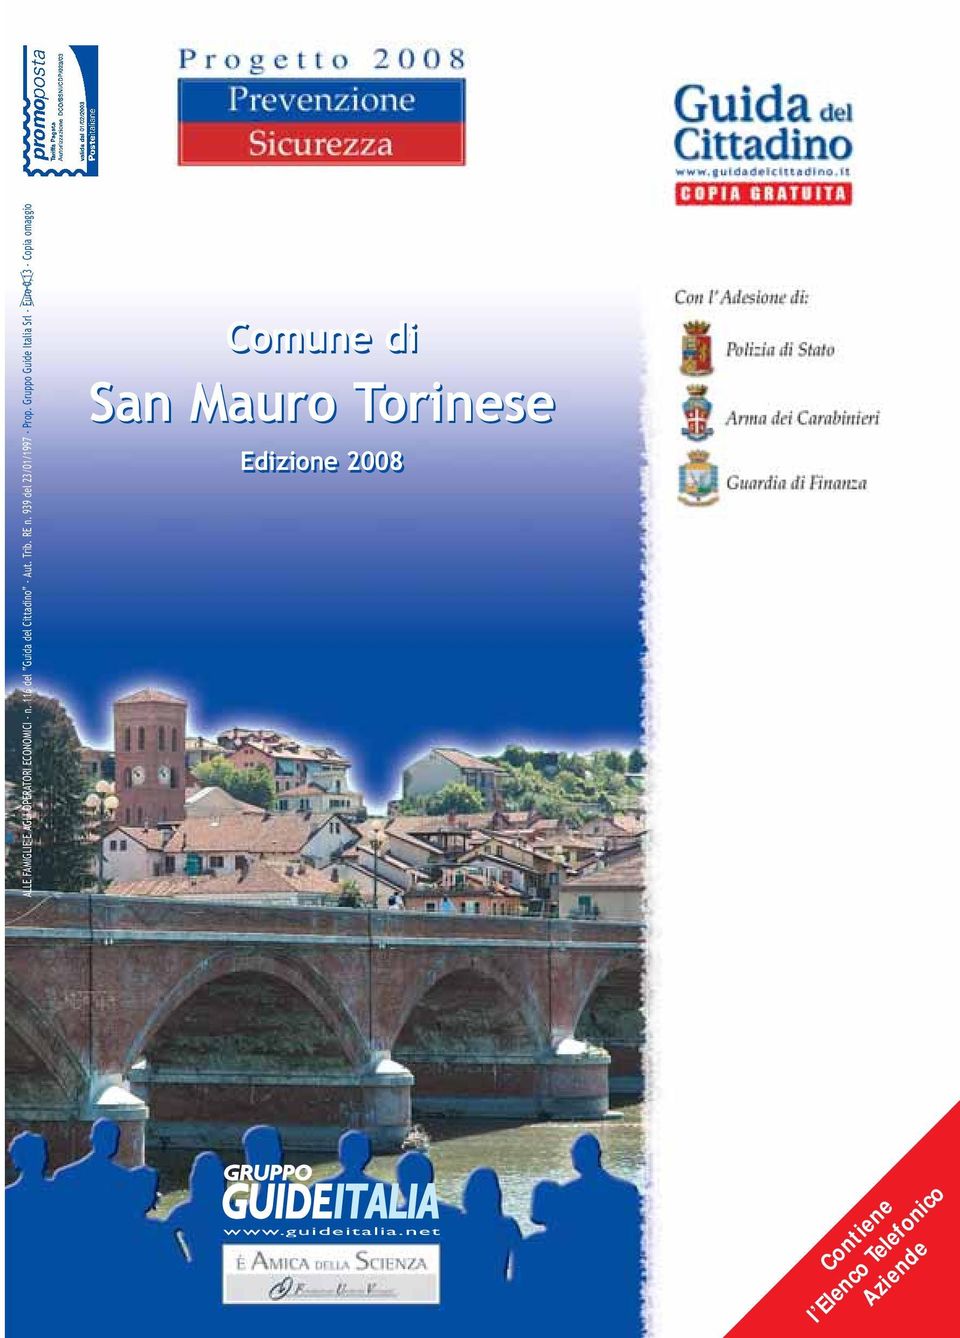 Gruppo Guide Italia Srl - Euro 0,13 - Copia omaggio Comune di San Mauro